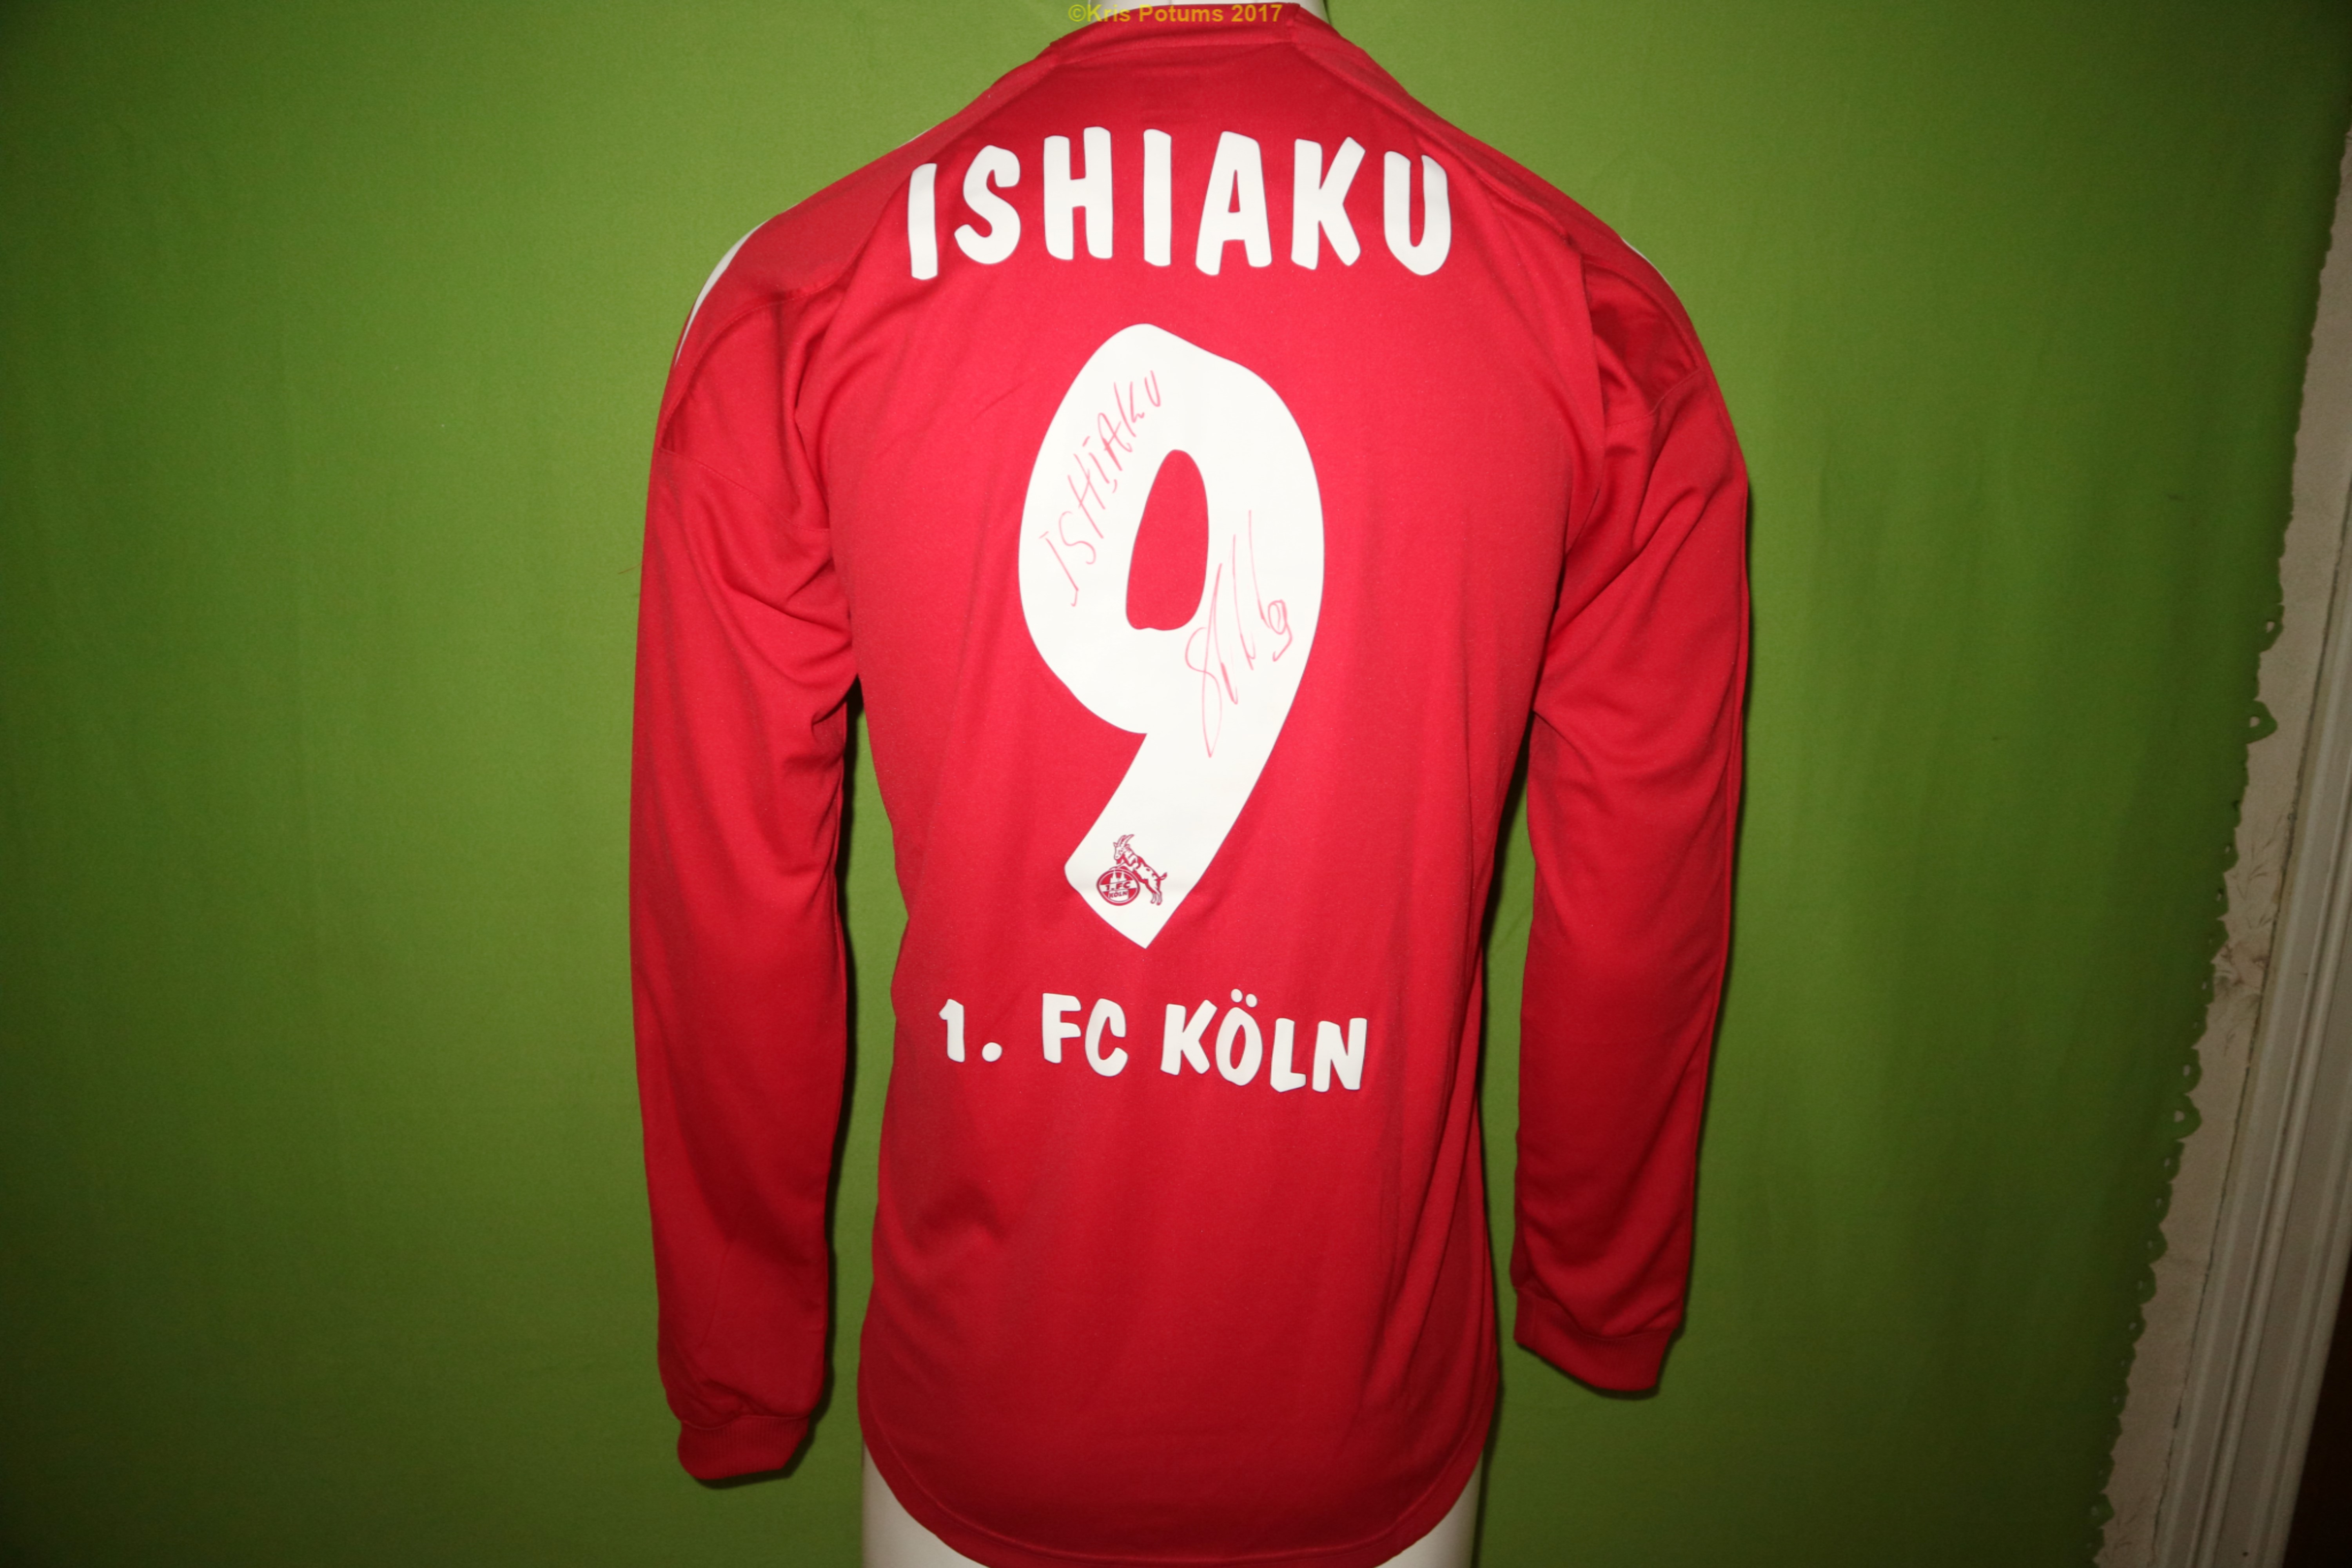 1.FC Koln